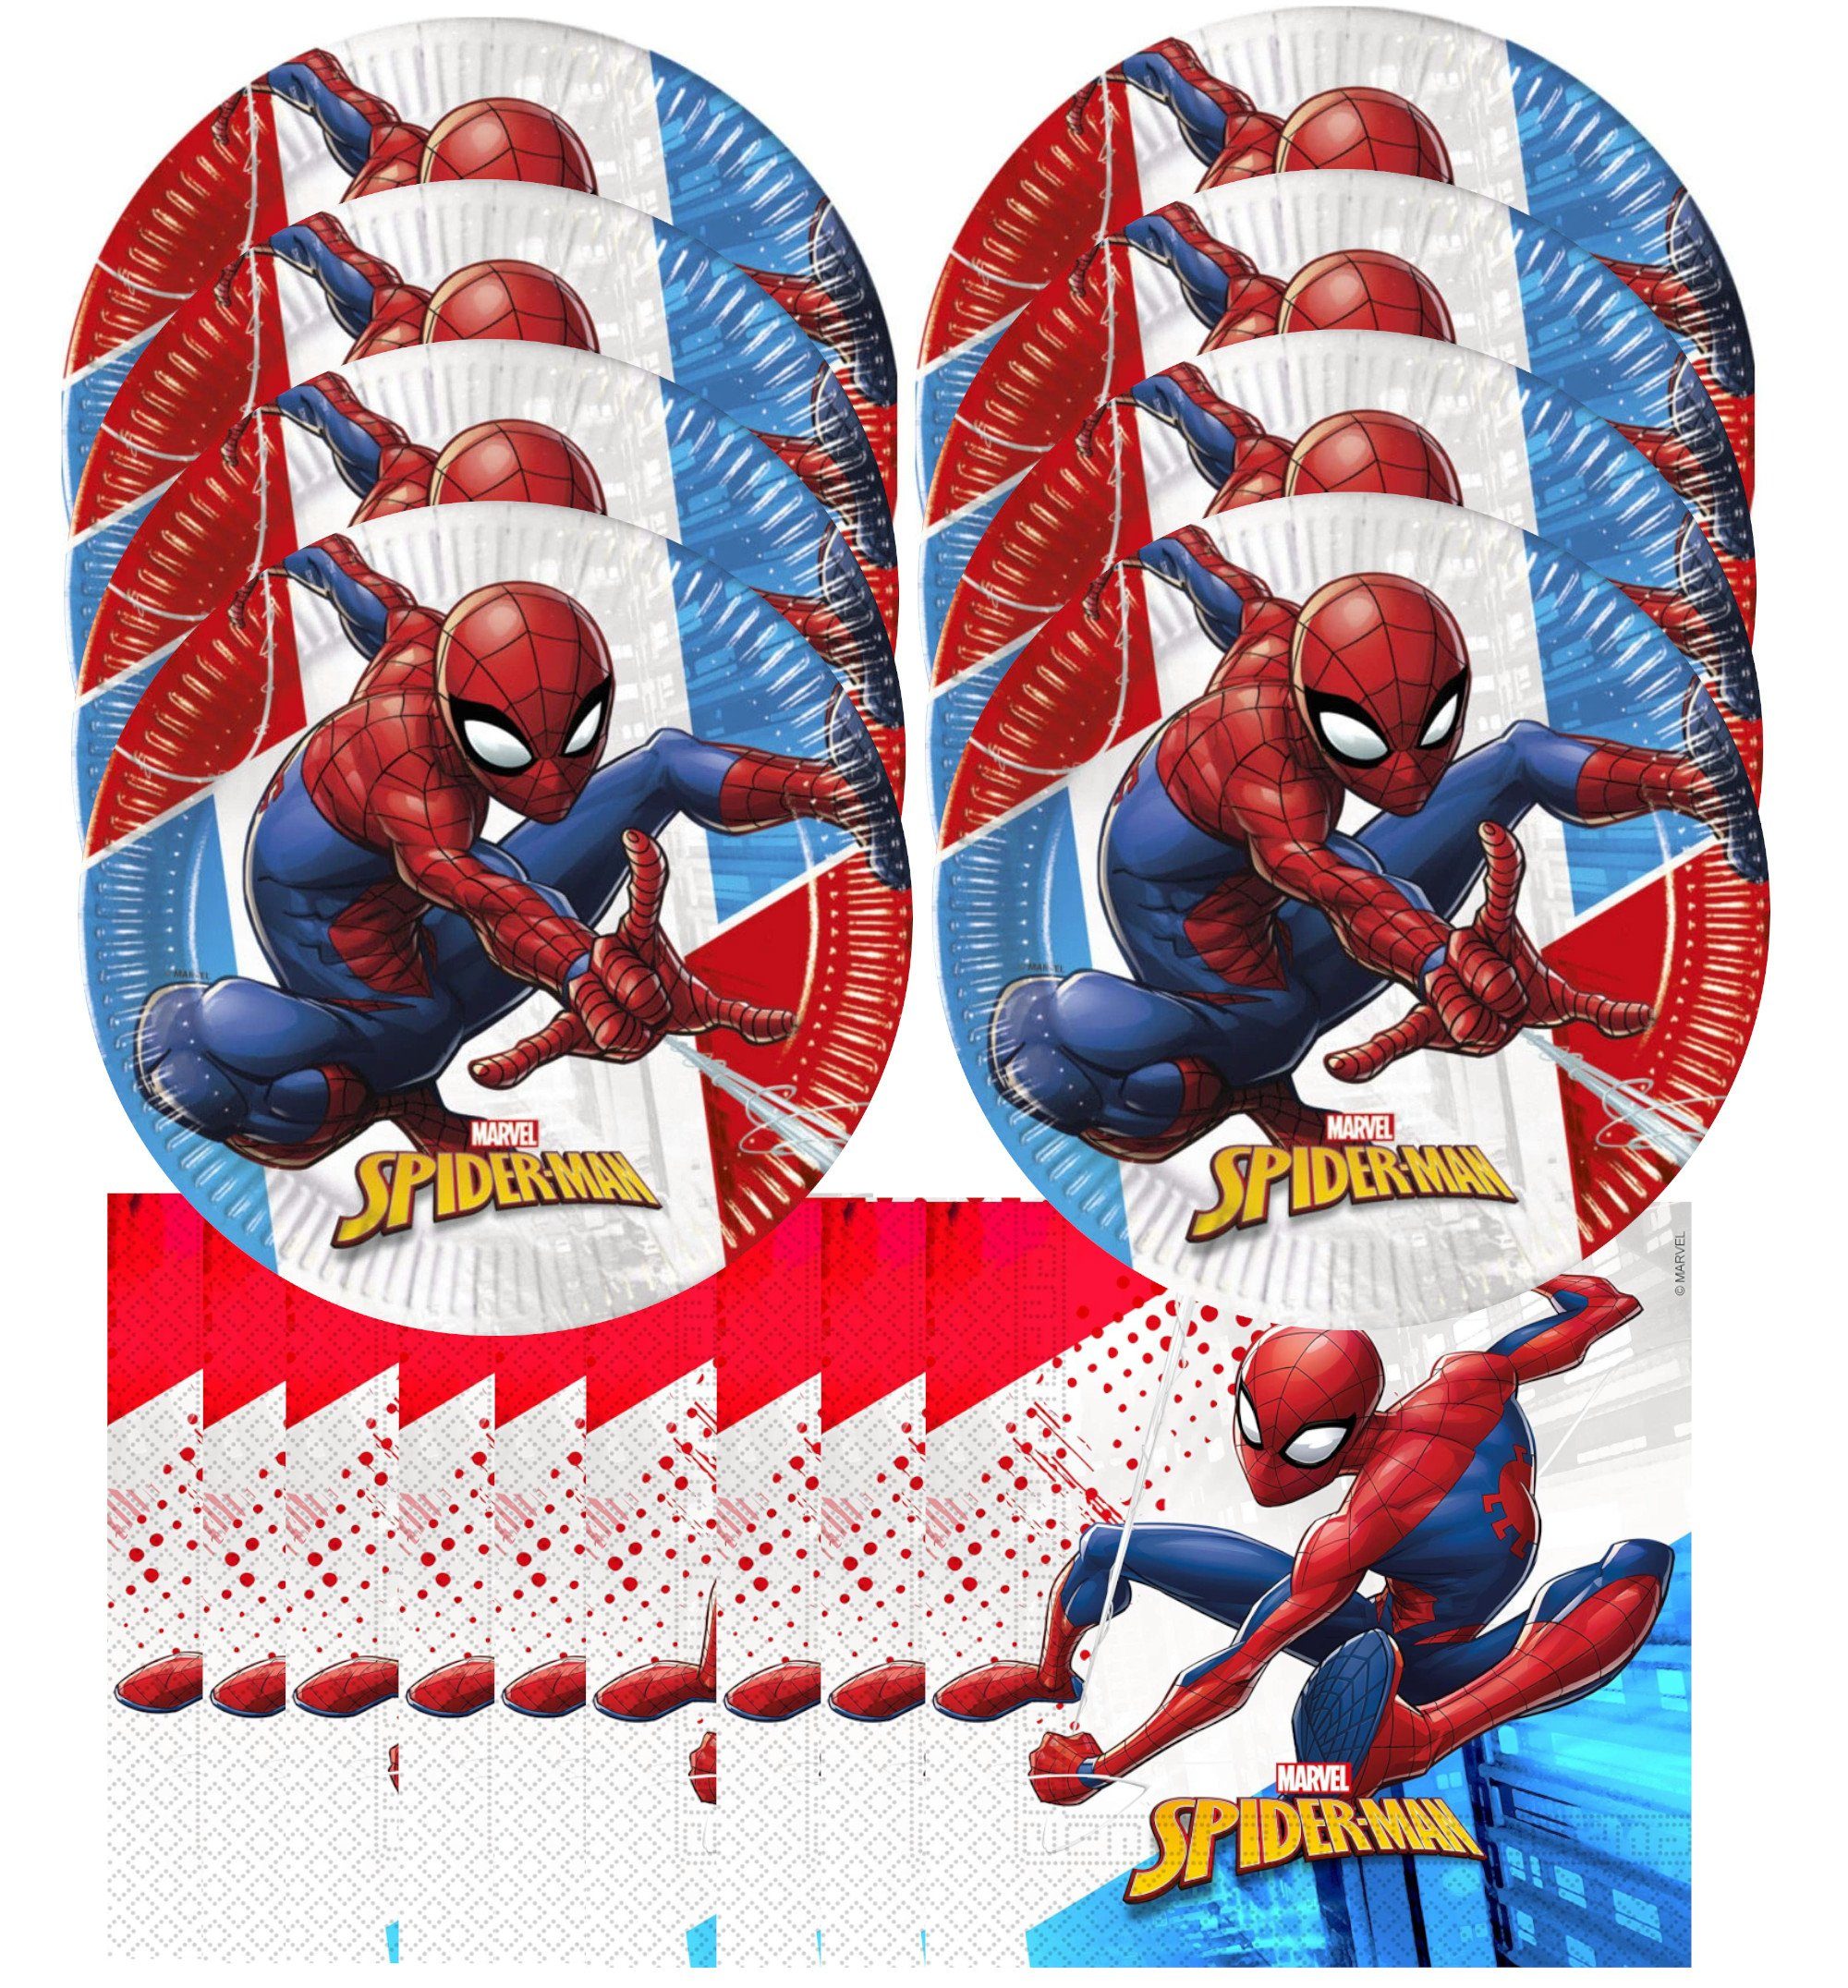 Procos Einweggeschirr-Set Spiderman - nachhaltiges Kindergeburtstags-Set (28-teilig), kompostierbare Materialien